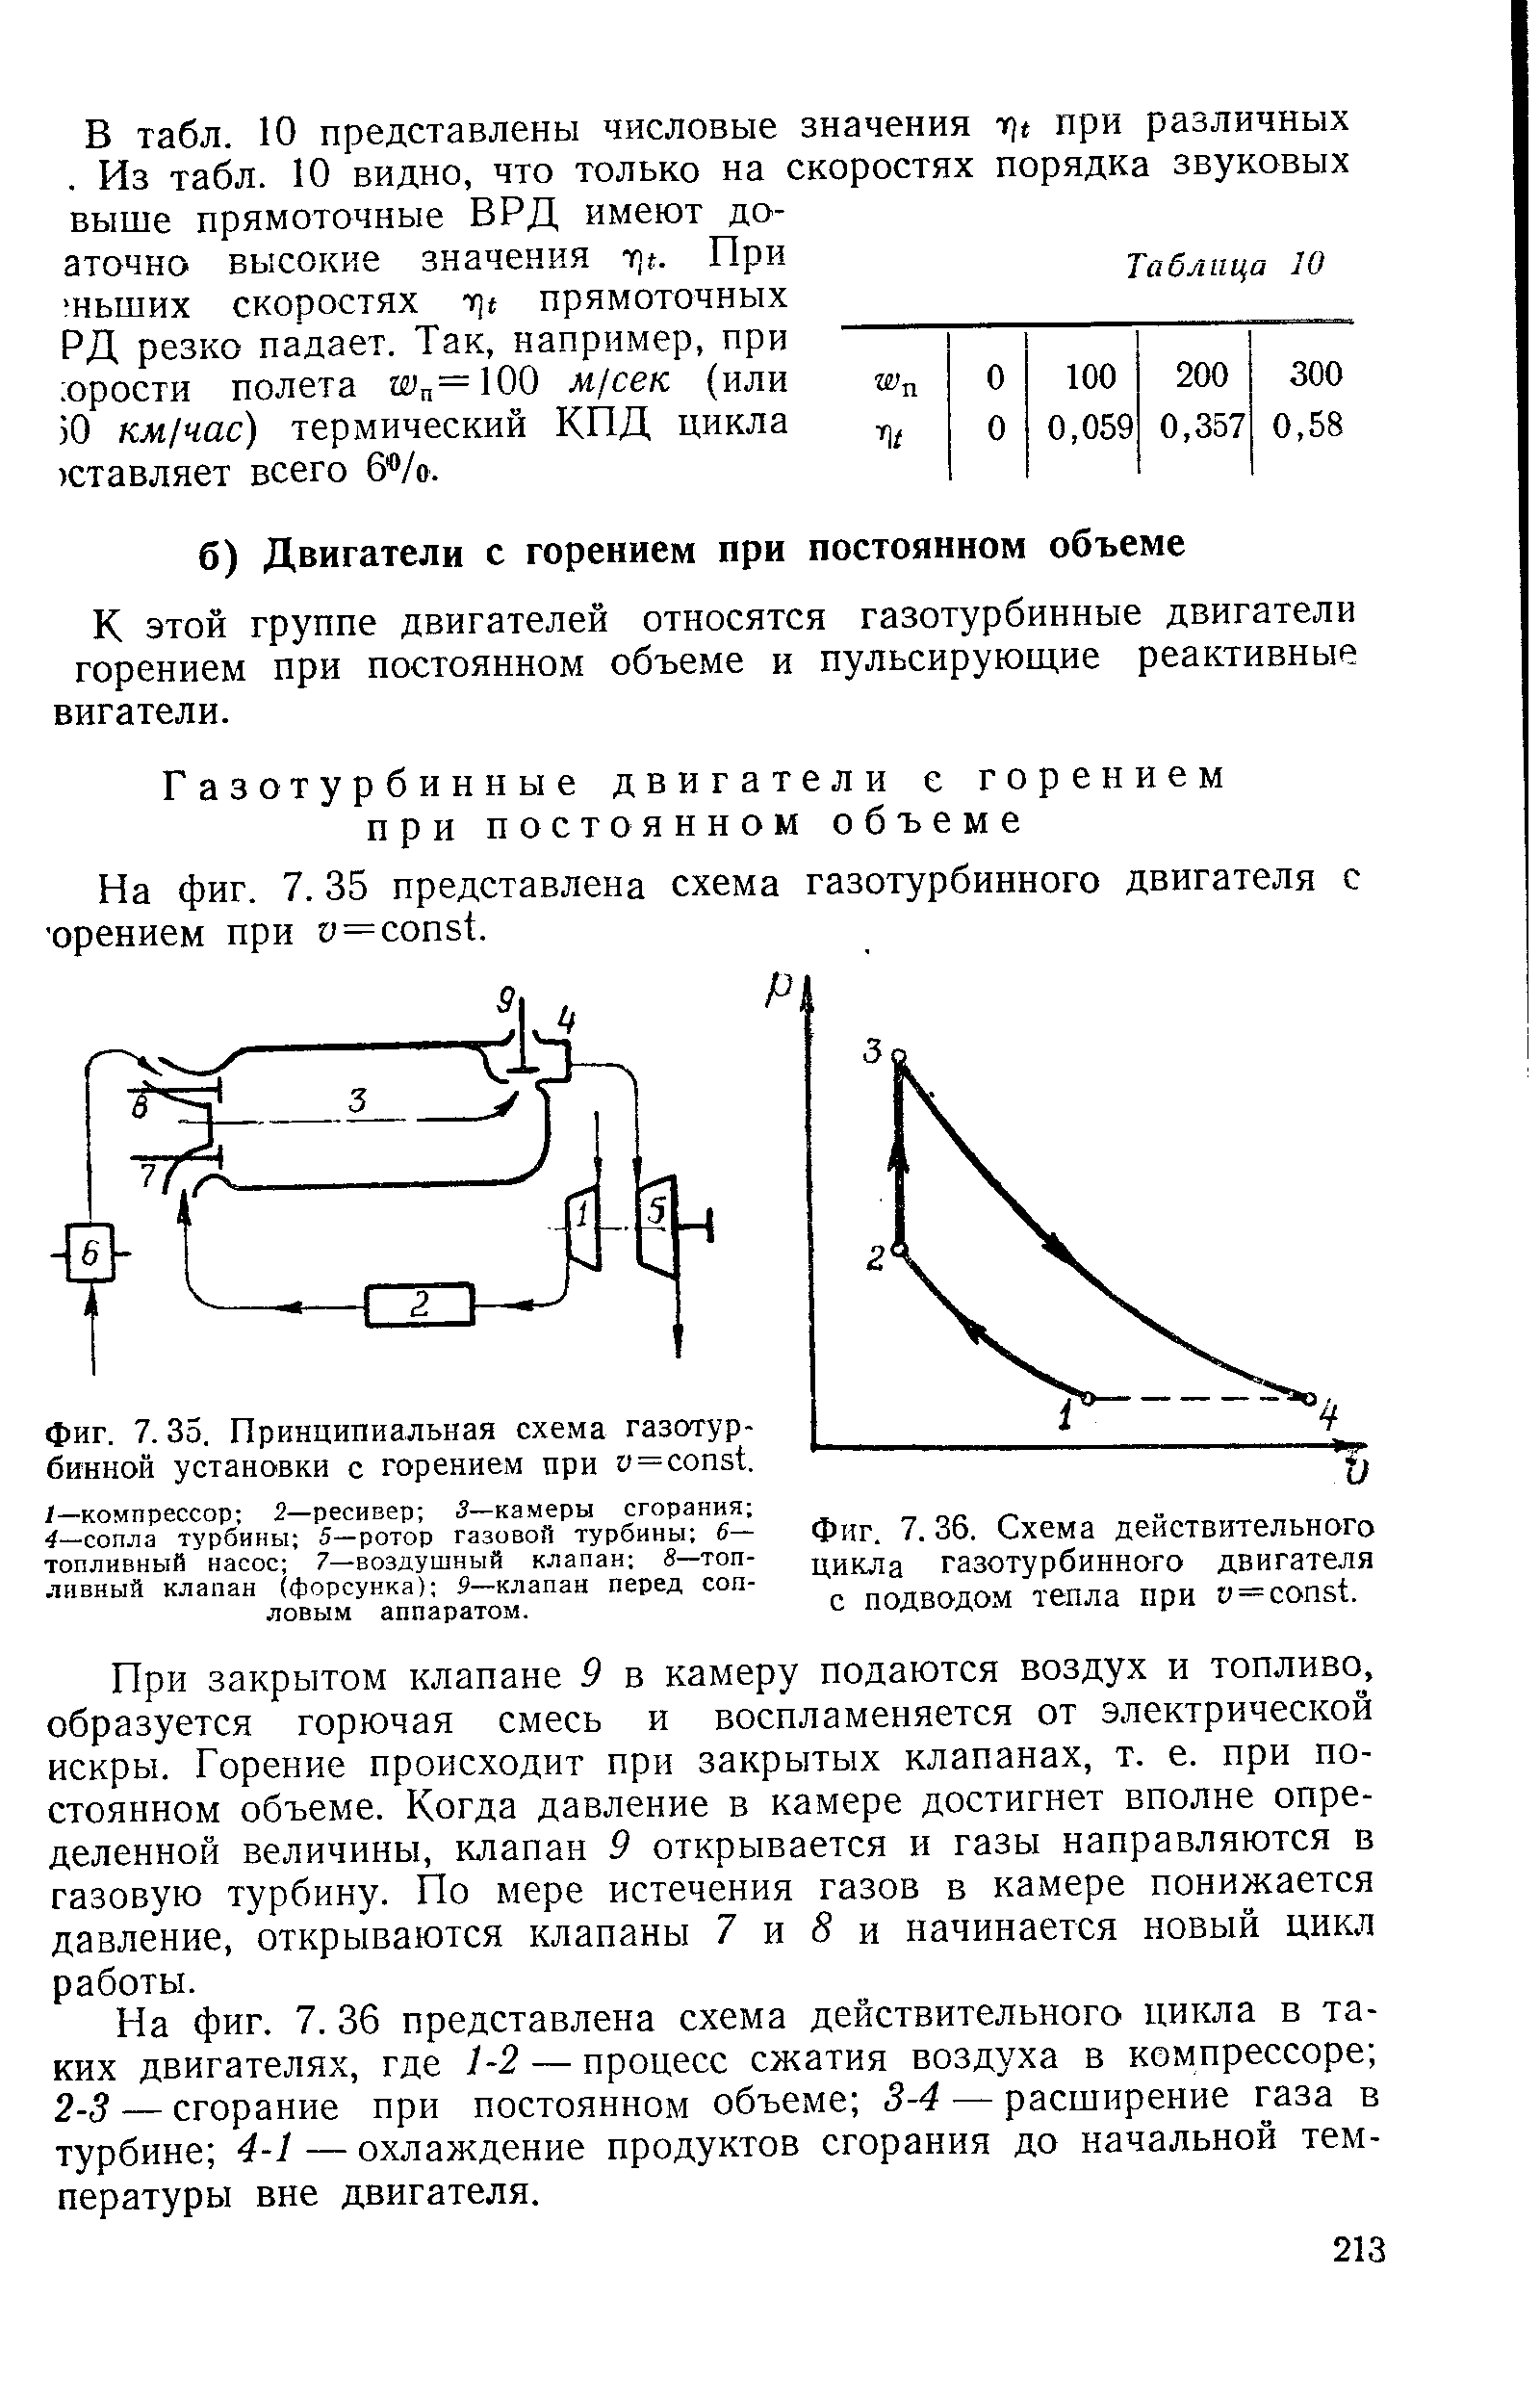 Фиг. 7. 36. Схема действительного цикла газотурбинного двигателя с подводом тепла при у = onst.
